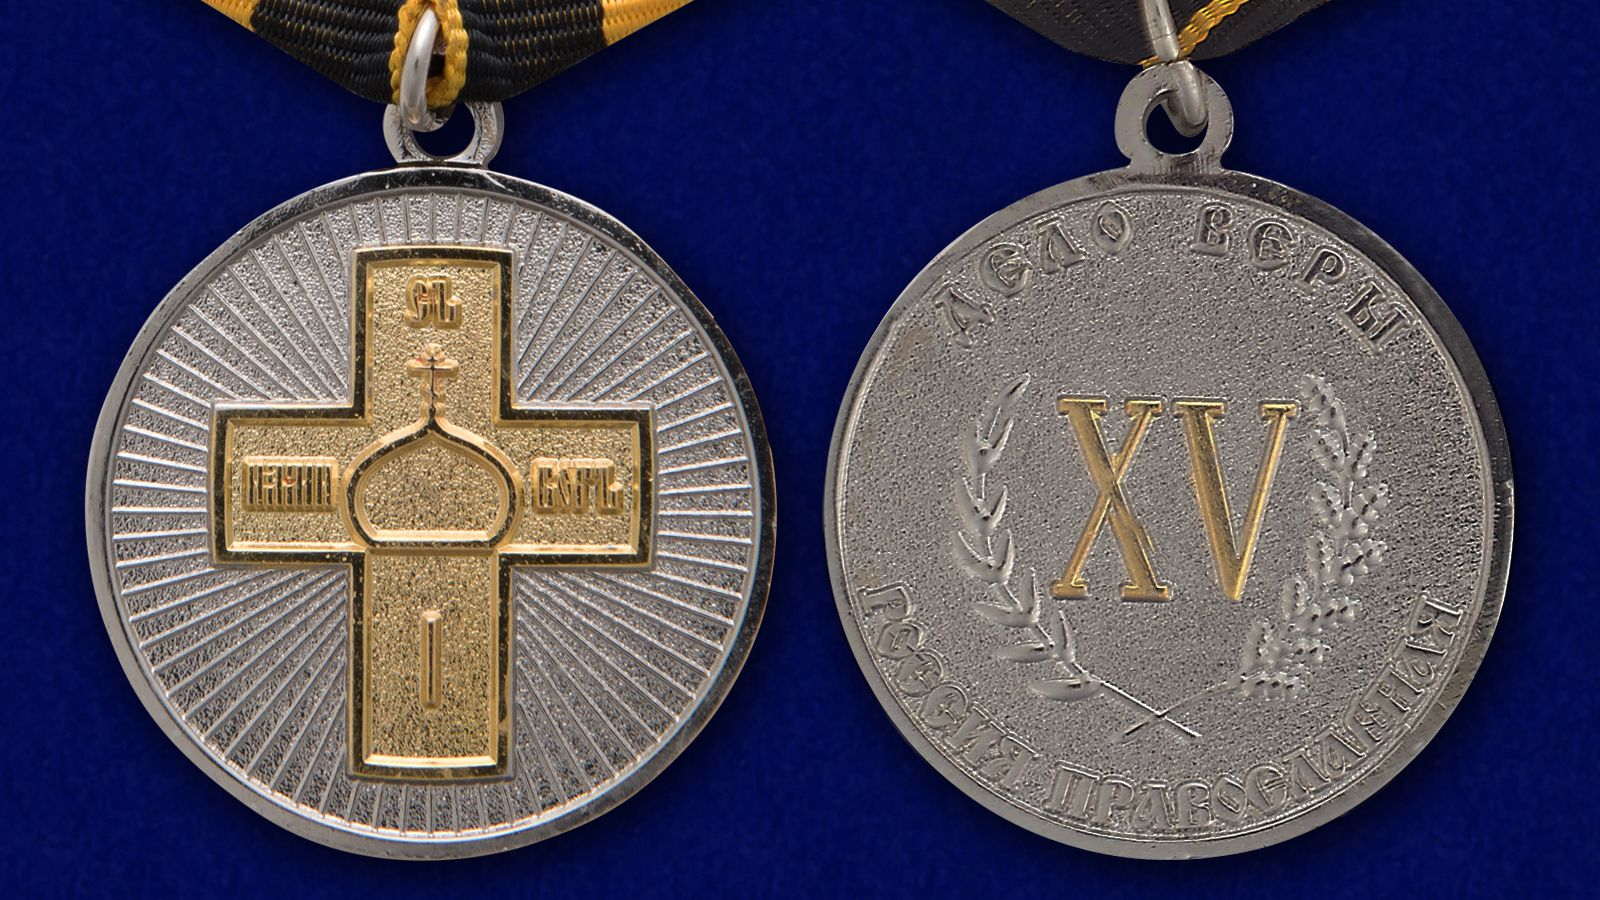 Православная медаль "Дело Веры" 2 степени 